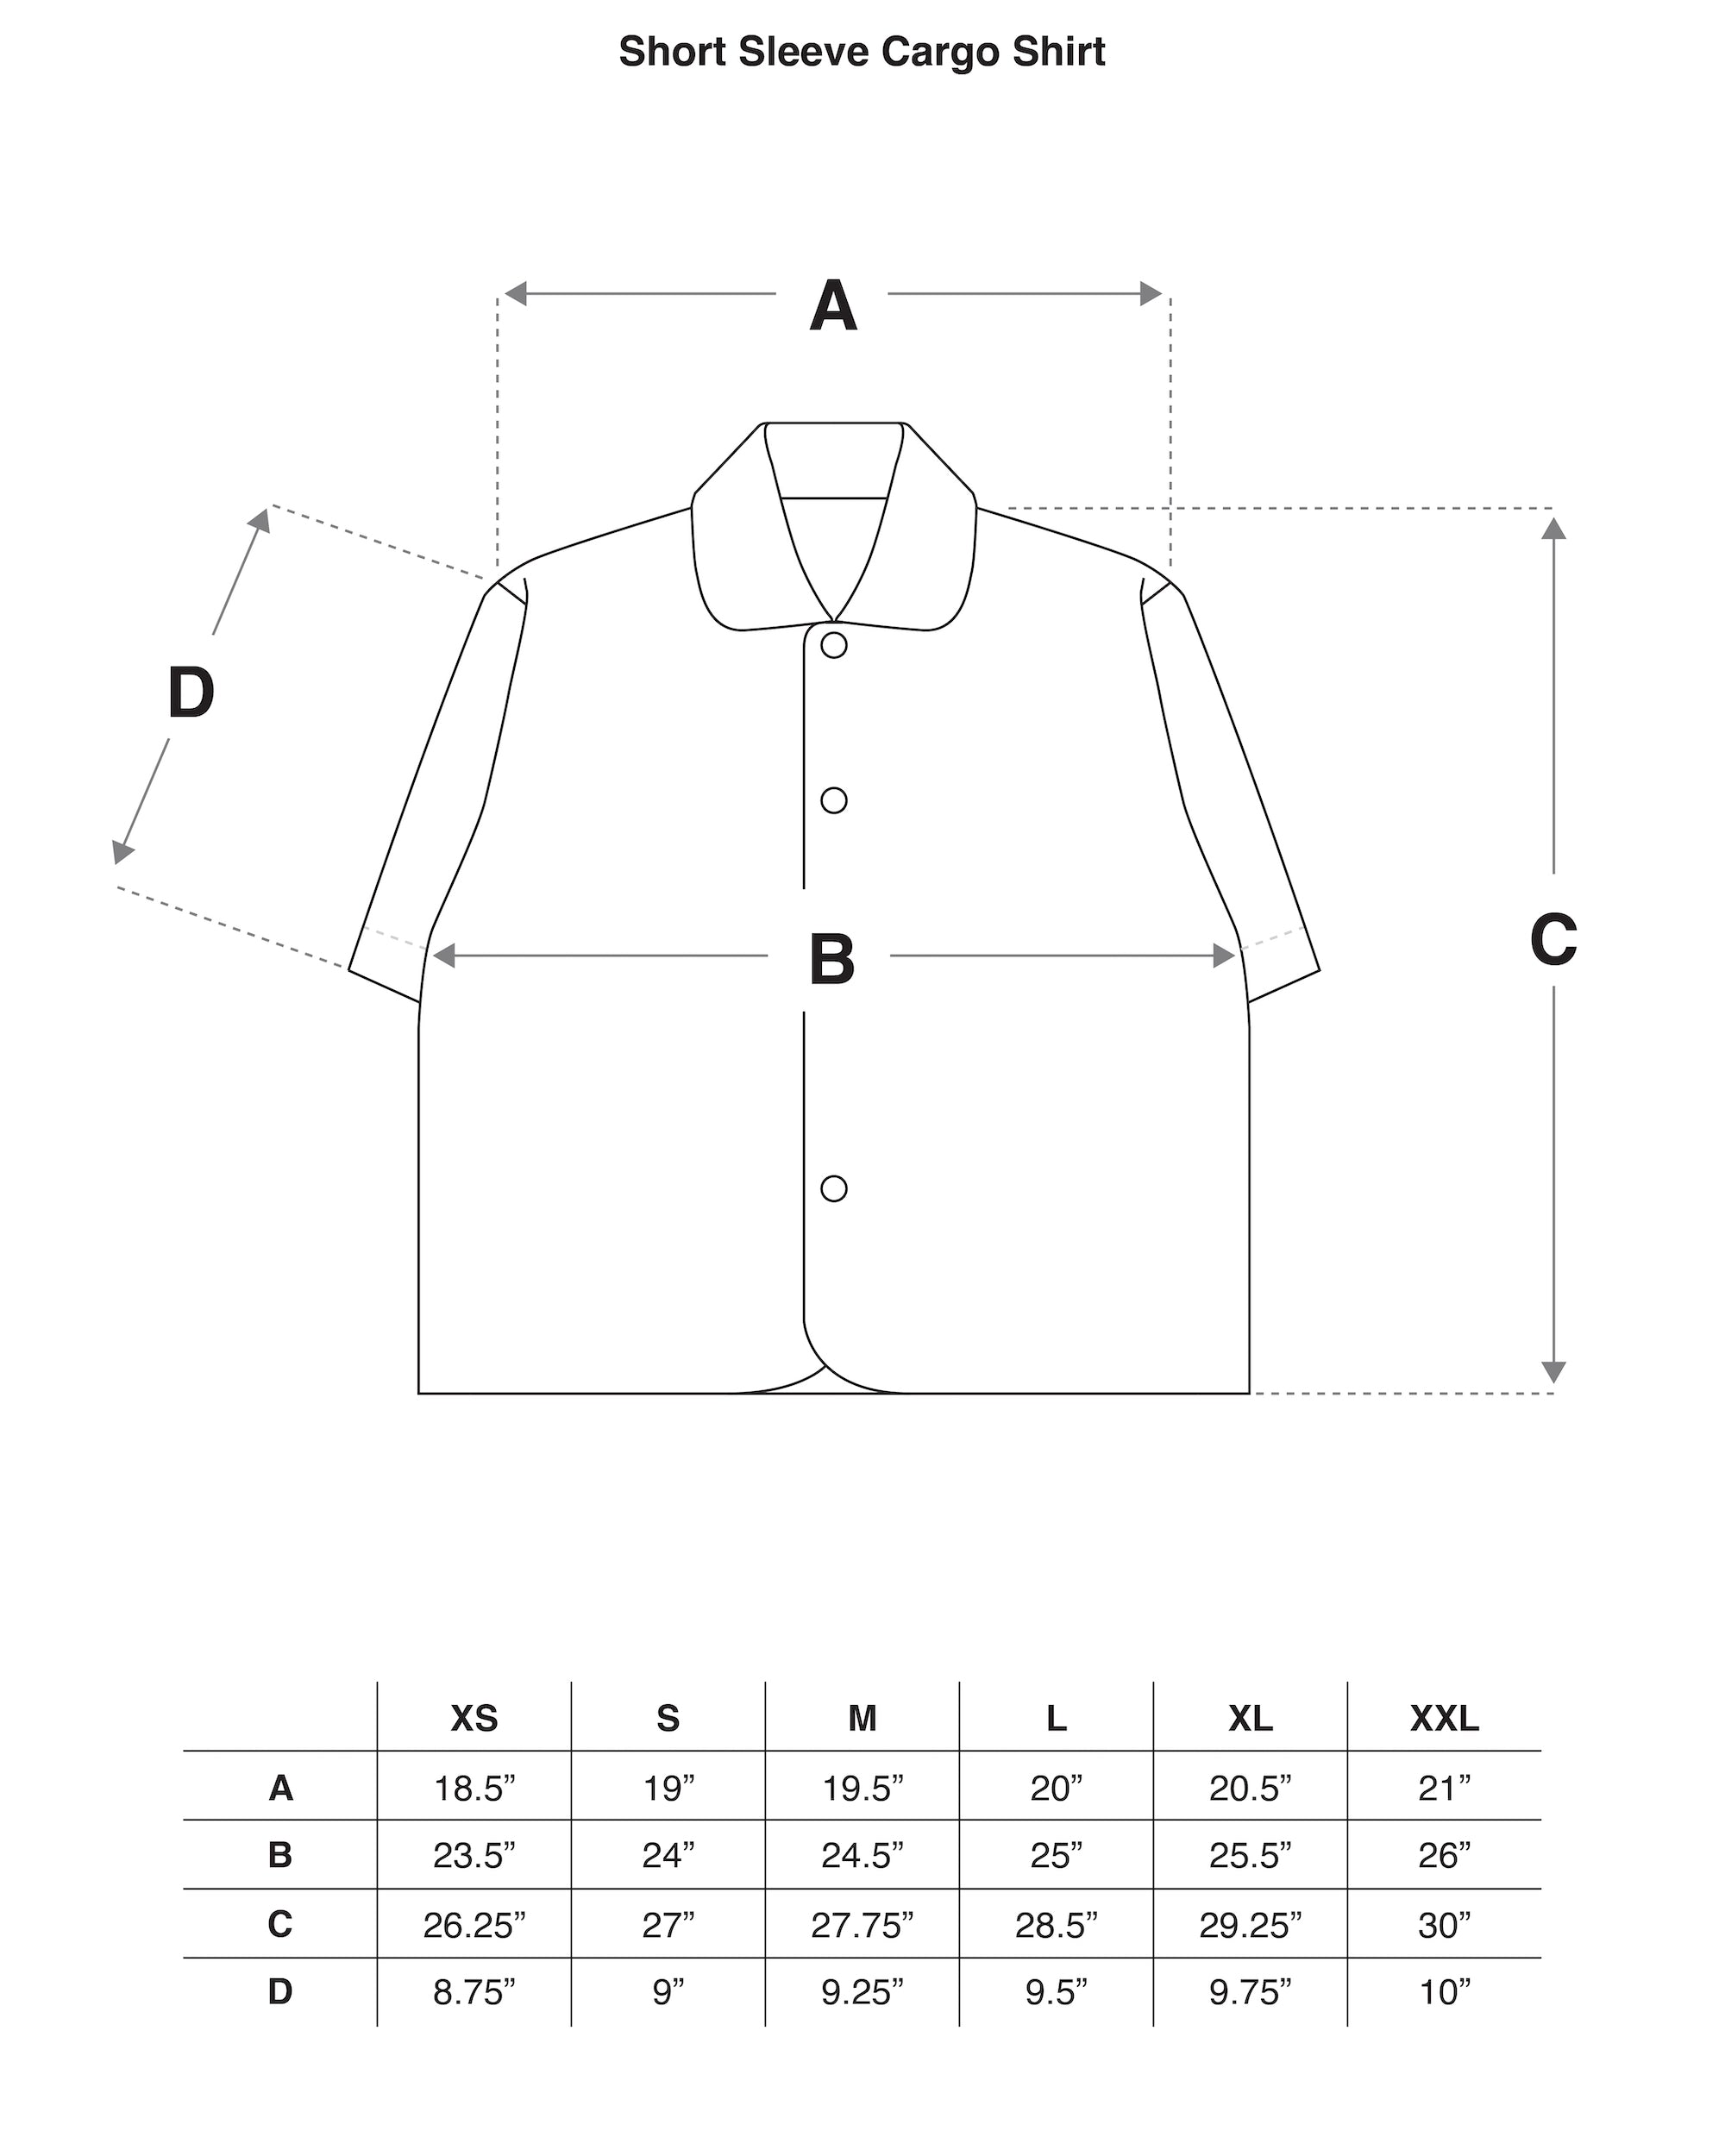 Desert Brush Printed Mesh Short Sleeve Cargo Shirt Size Guide